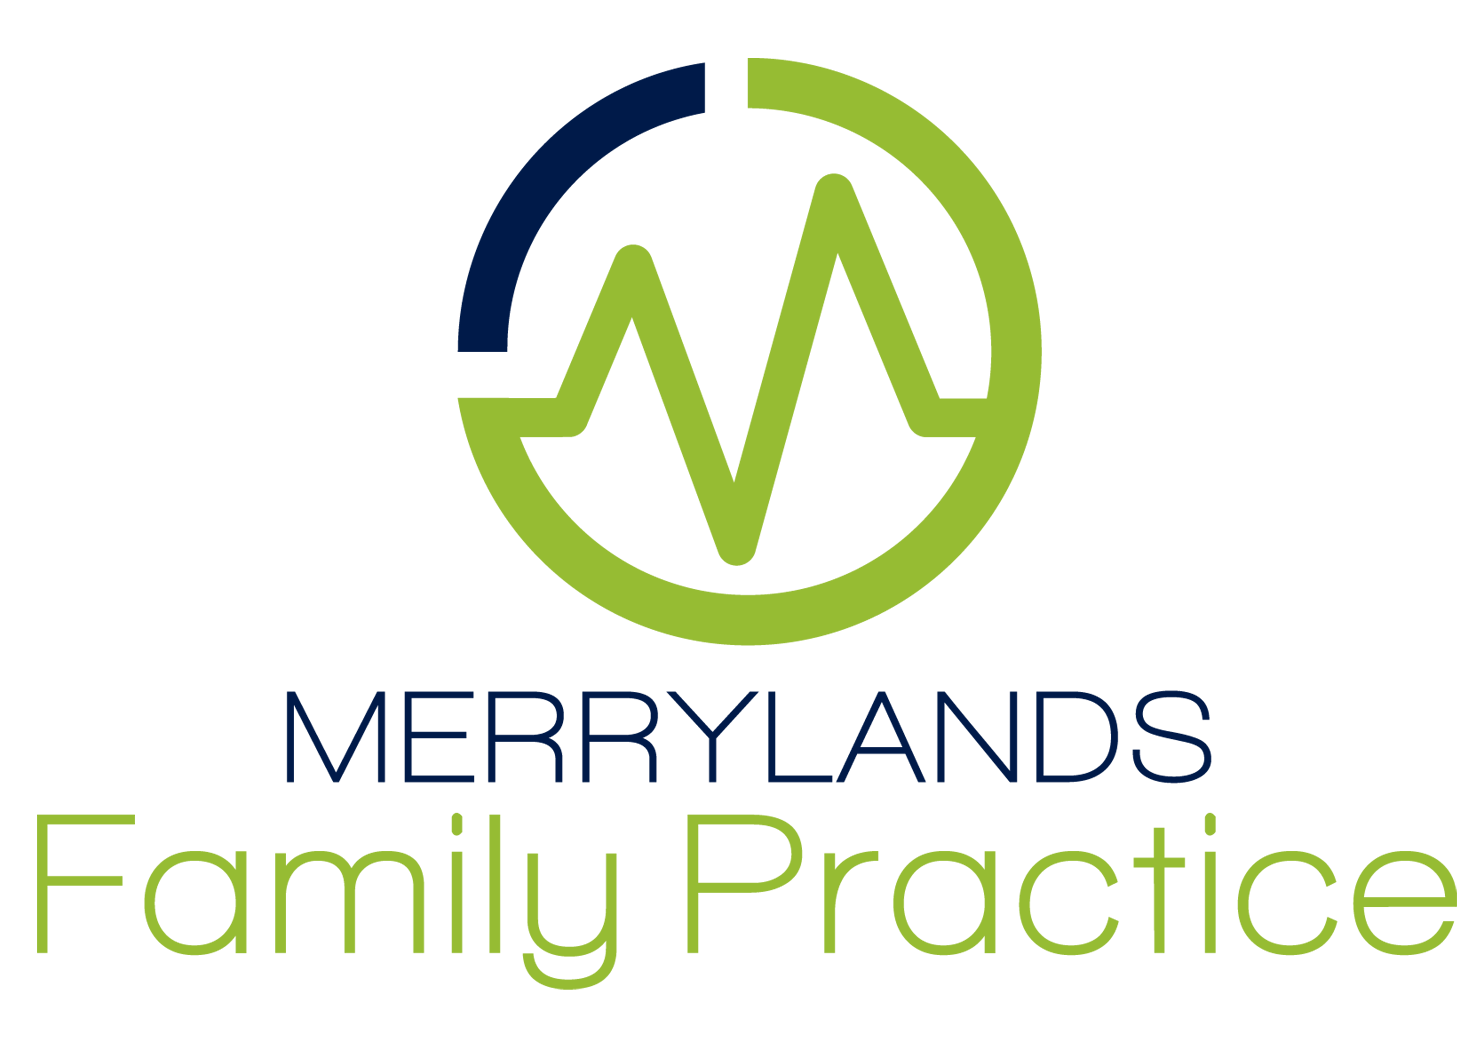 Merrylands Family Practice